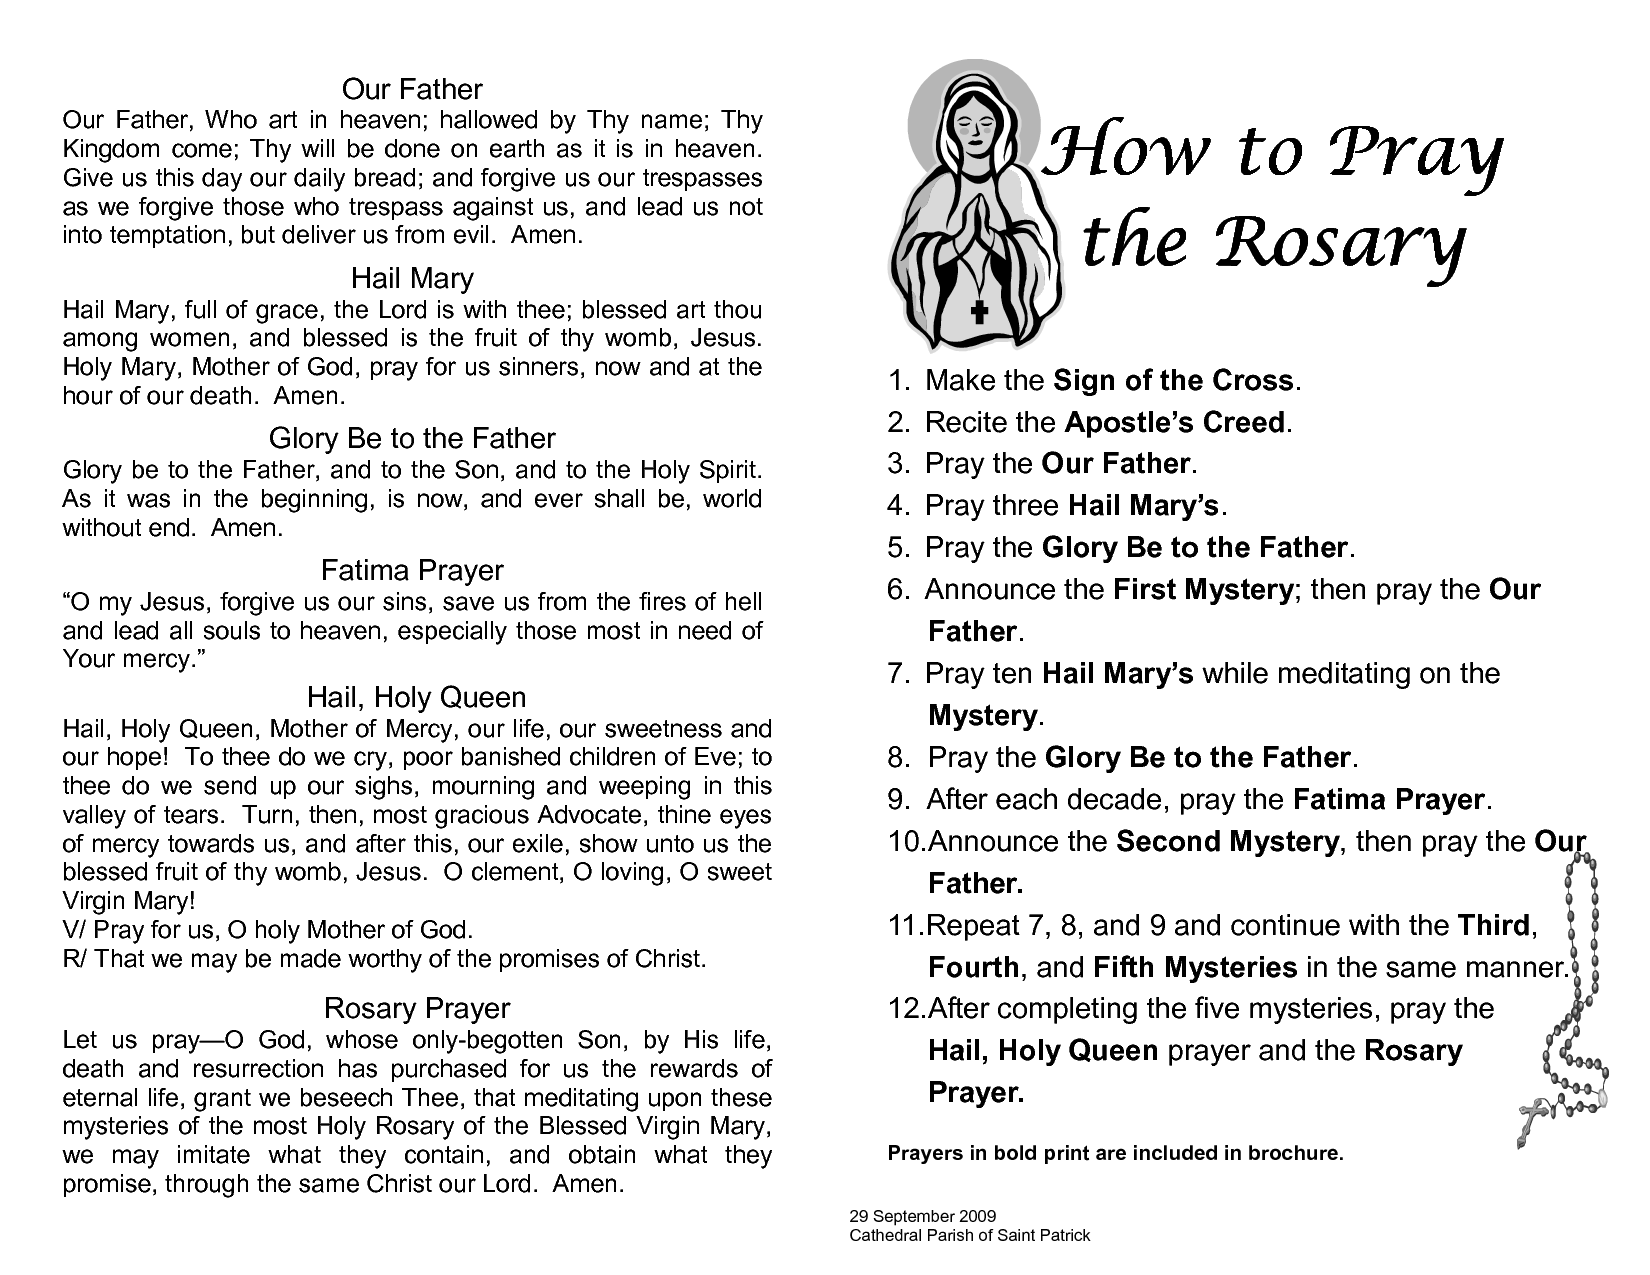 Printable+Rosary+Prayer+Guide | religious | Pinterest | Rosary ...